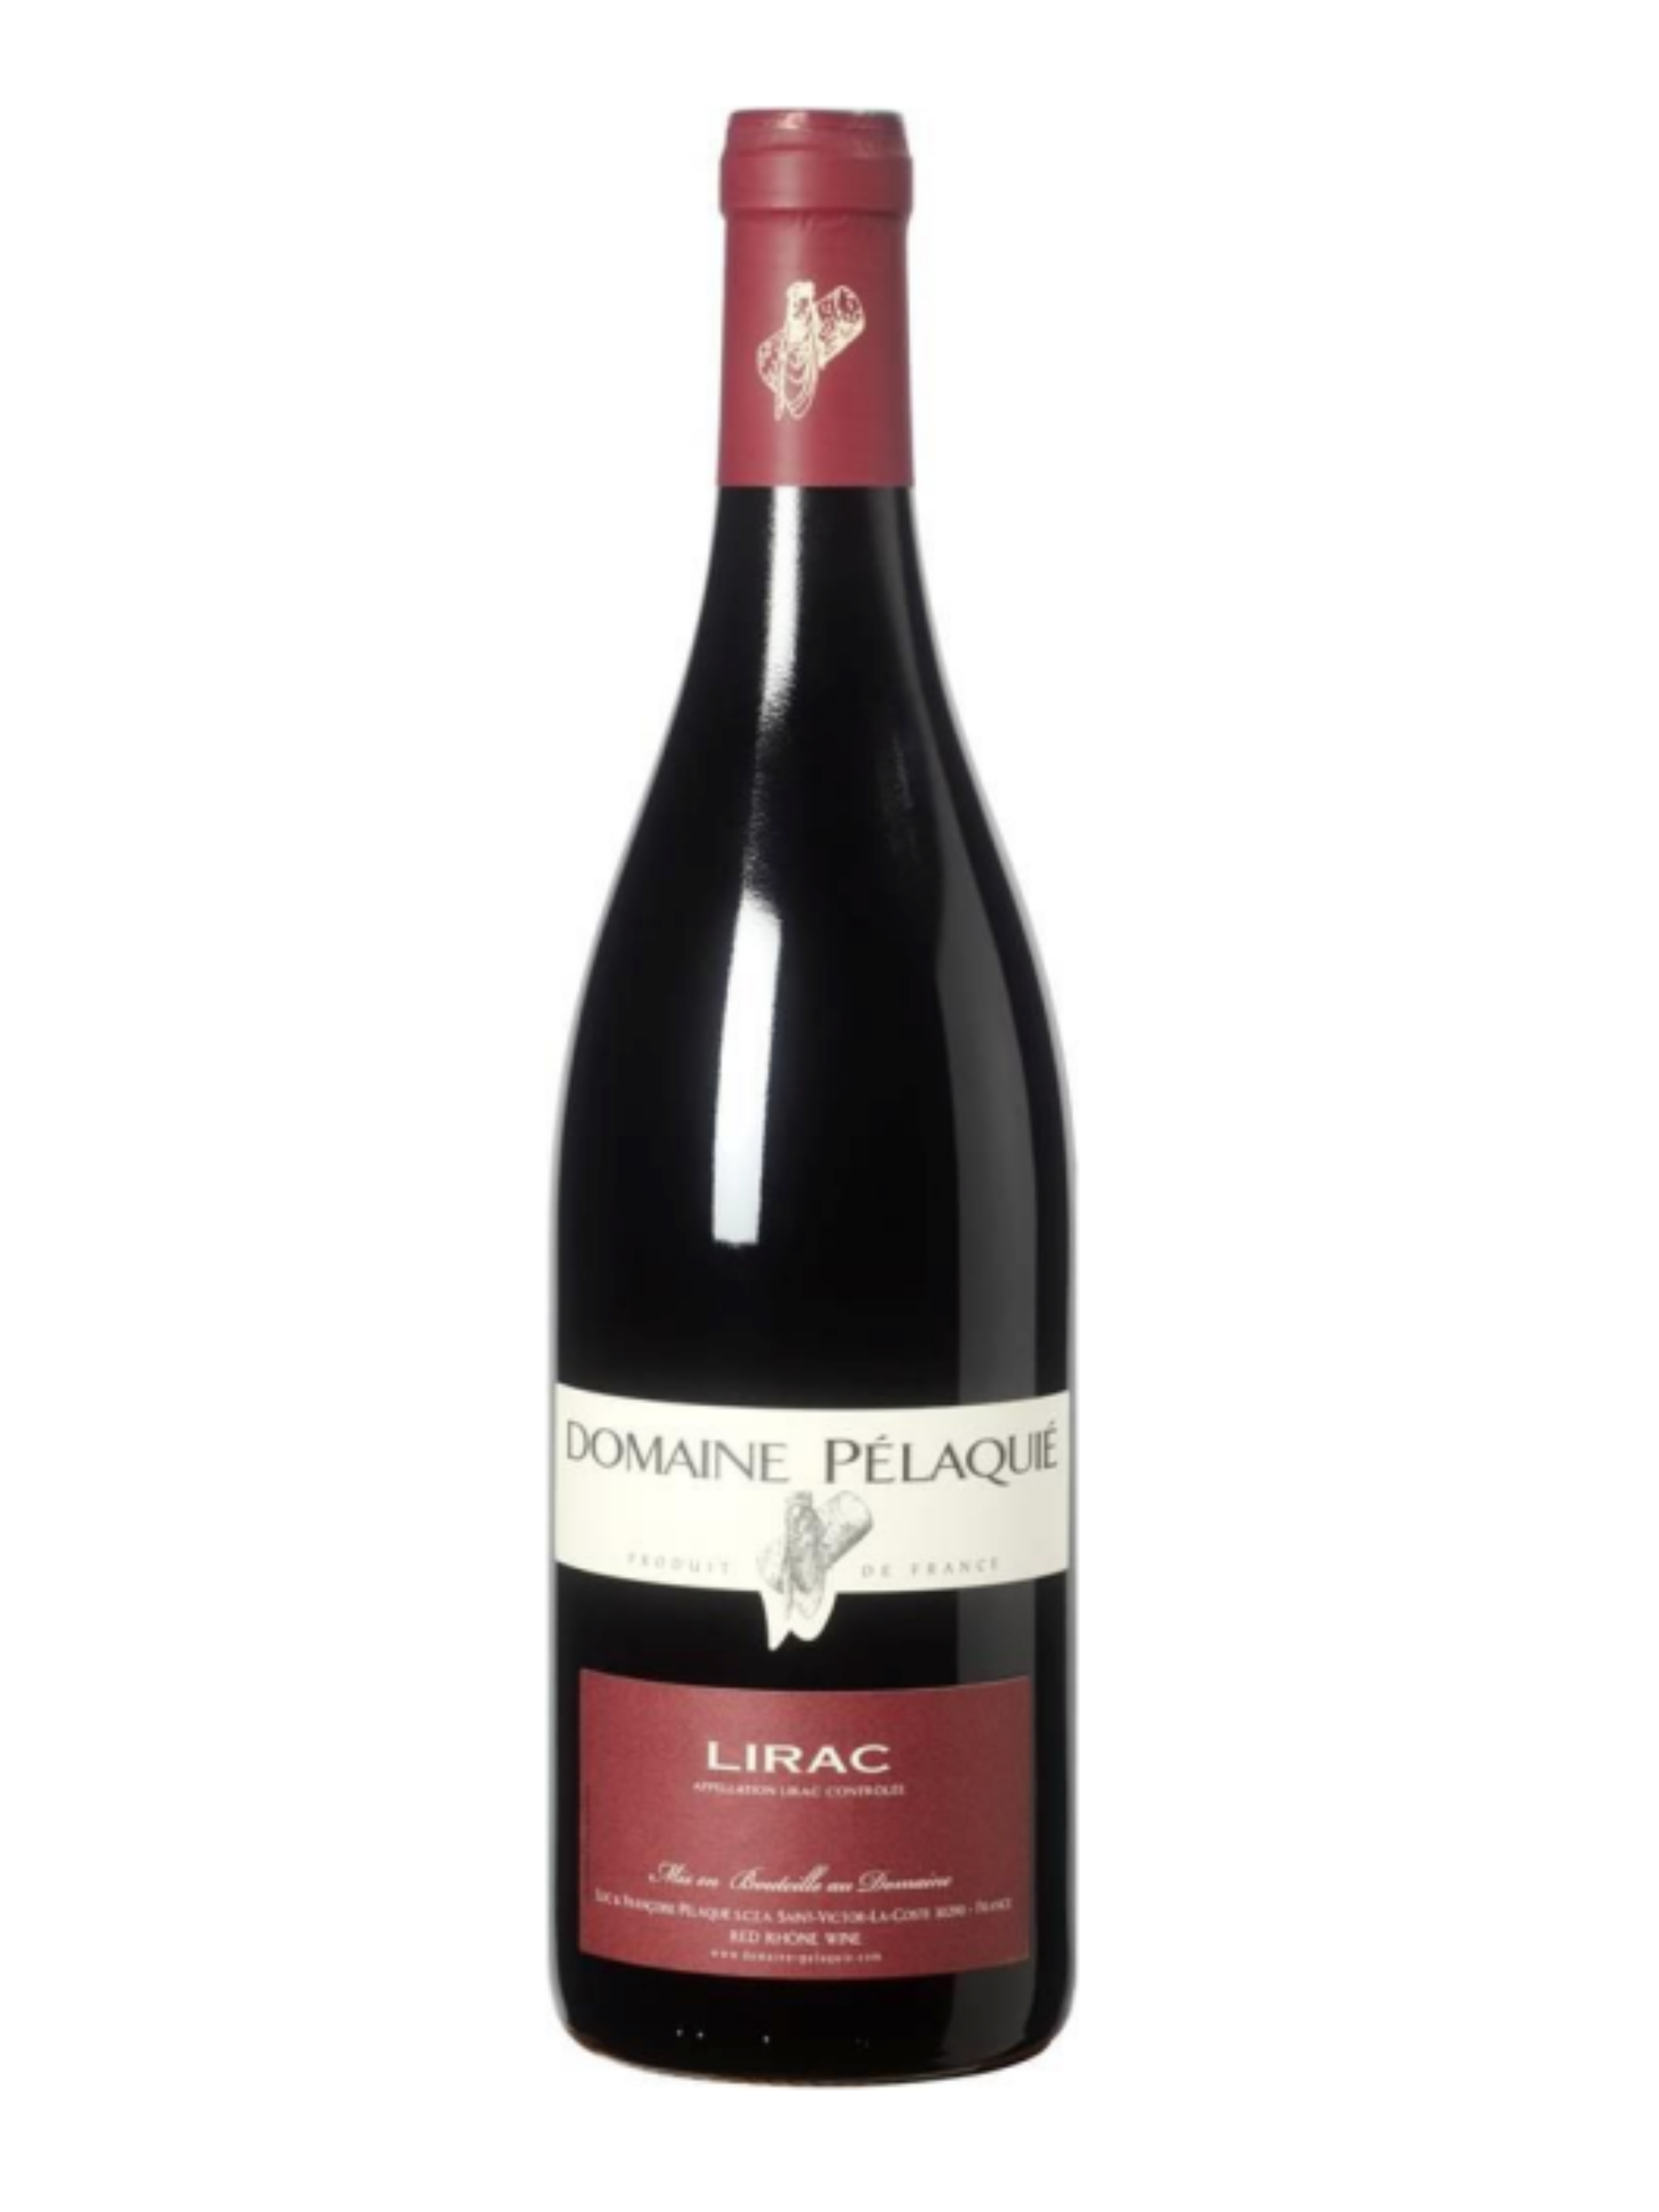 Bouteille de vin rouge Lirac produit par Le domaine Pélaquié - 1020 Dégustations